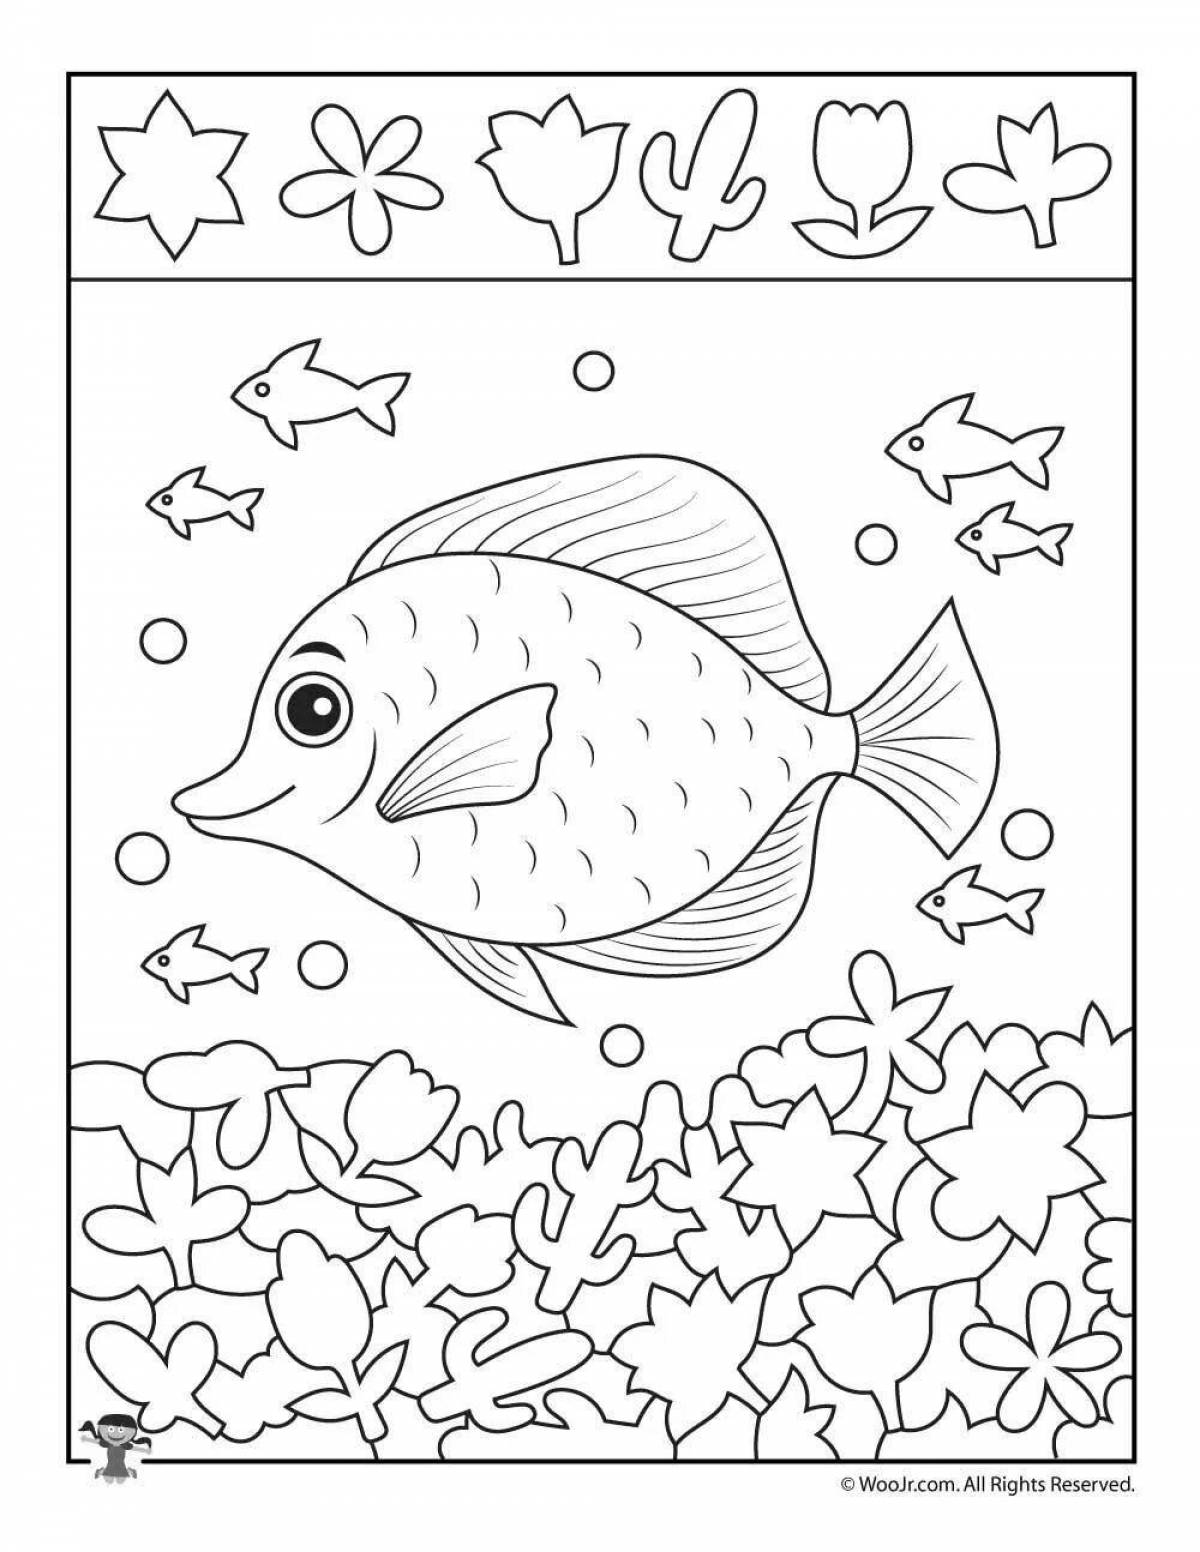 Cute aquarium fish coloring book for kids